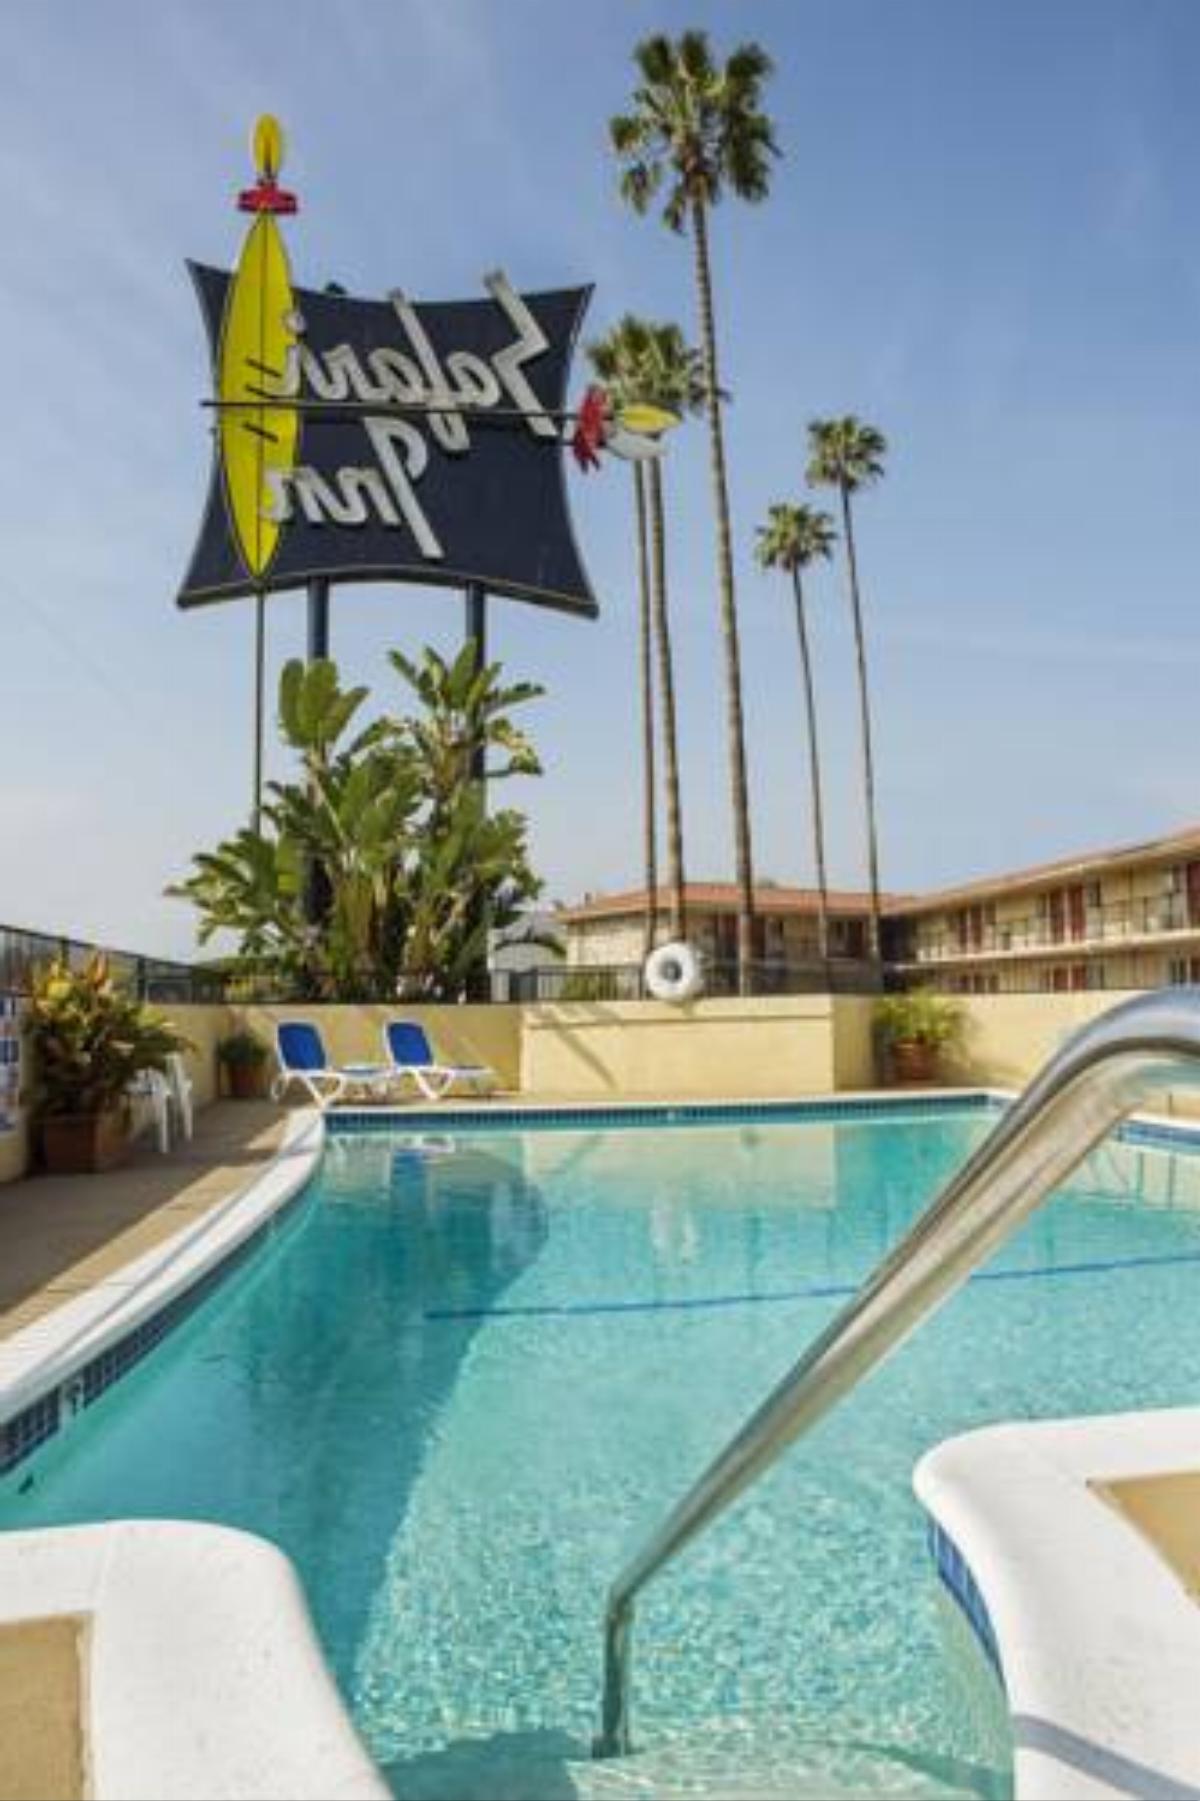 Safari Inn, a Coast Hotel Hotel Burbank USA